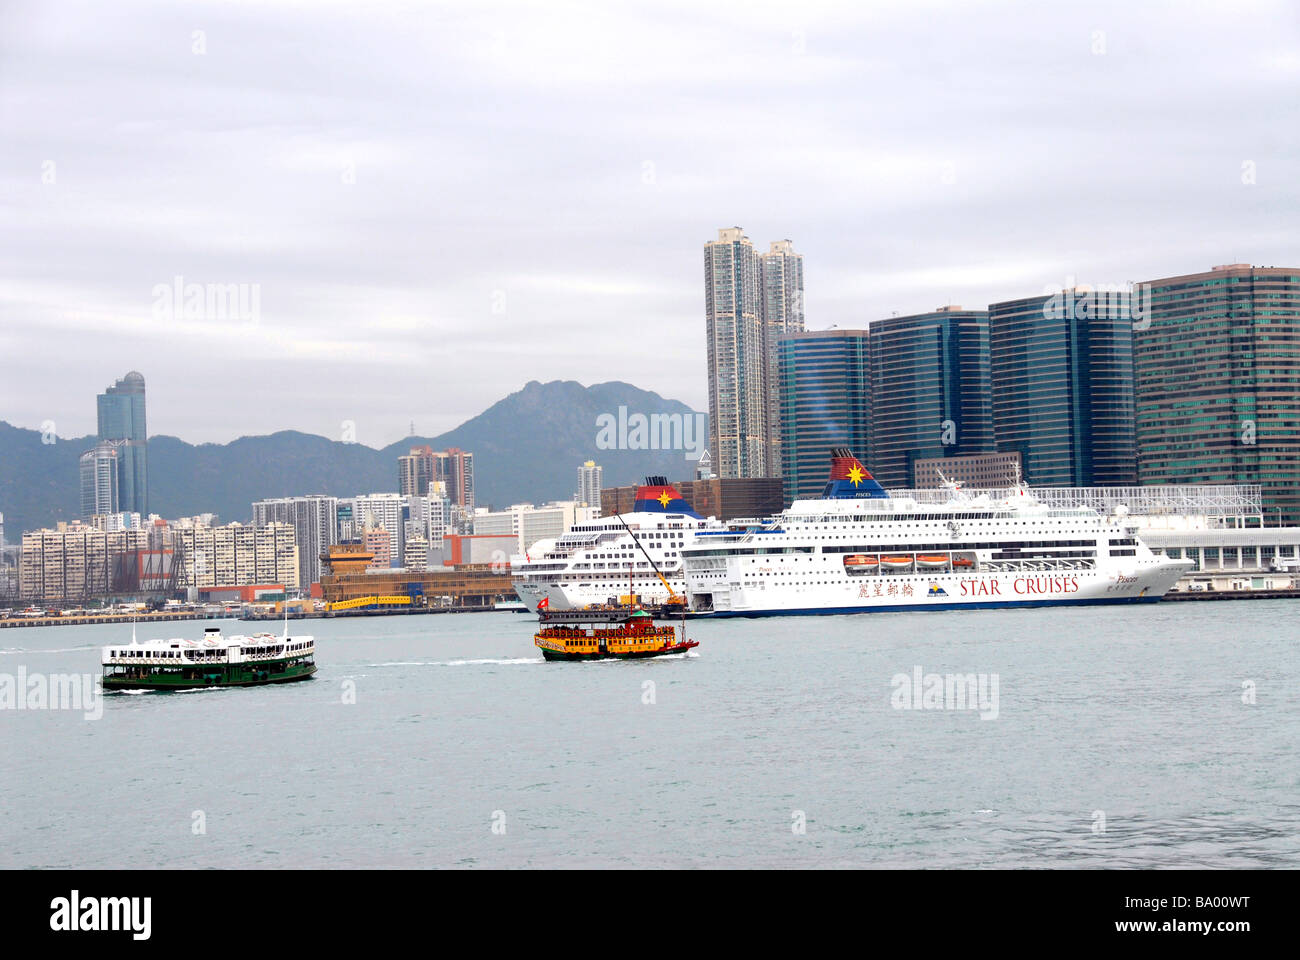 Bateau de croisière, bateaux, la baie de Hong Kong, Chine Banque D'Images